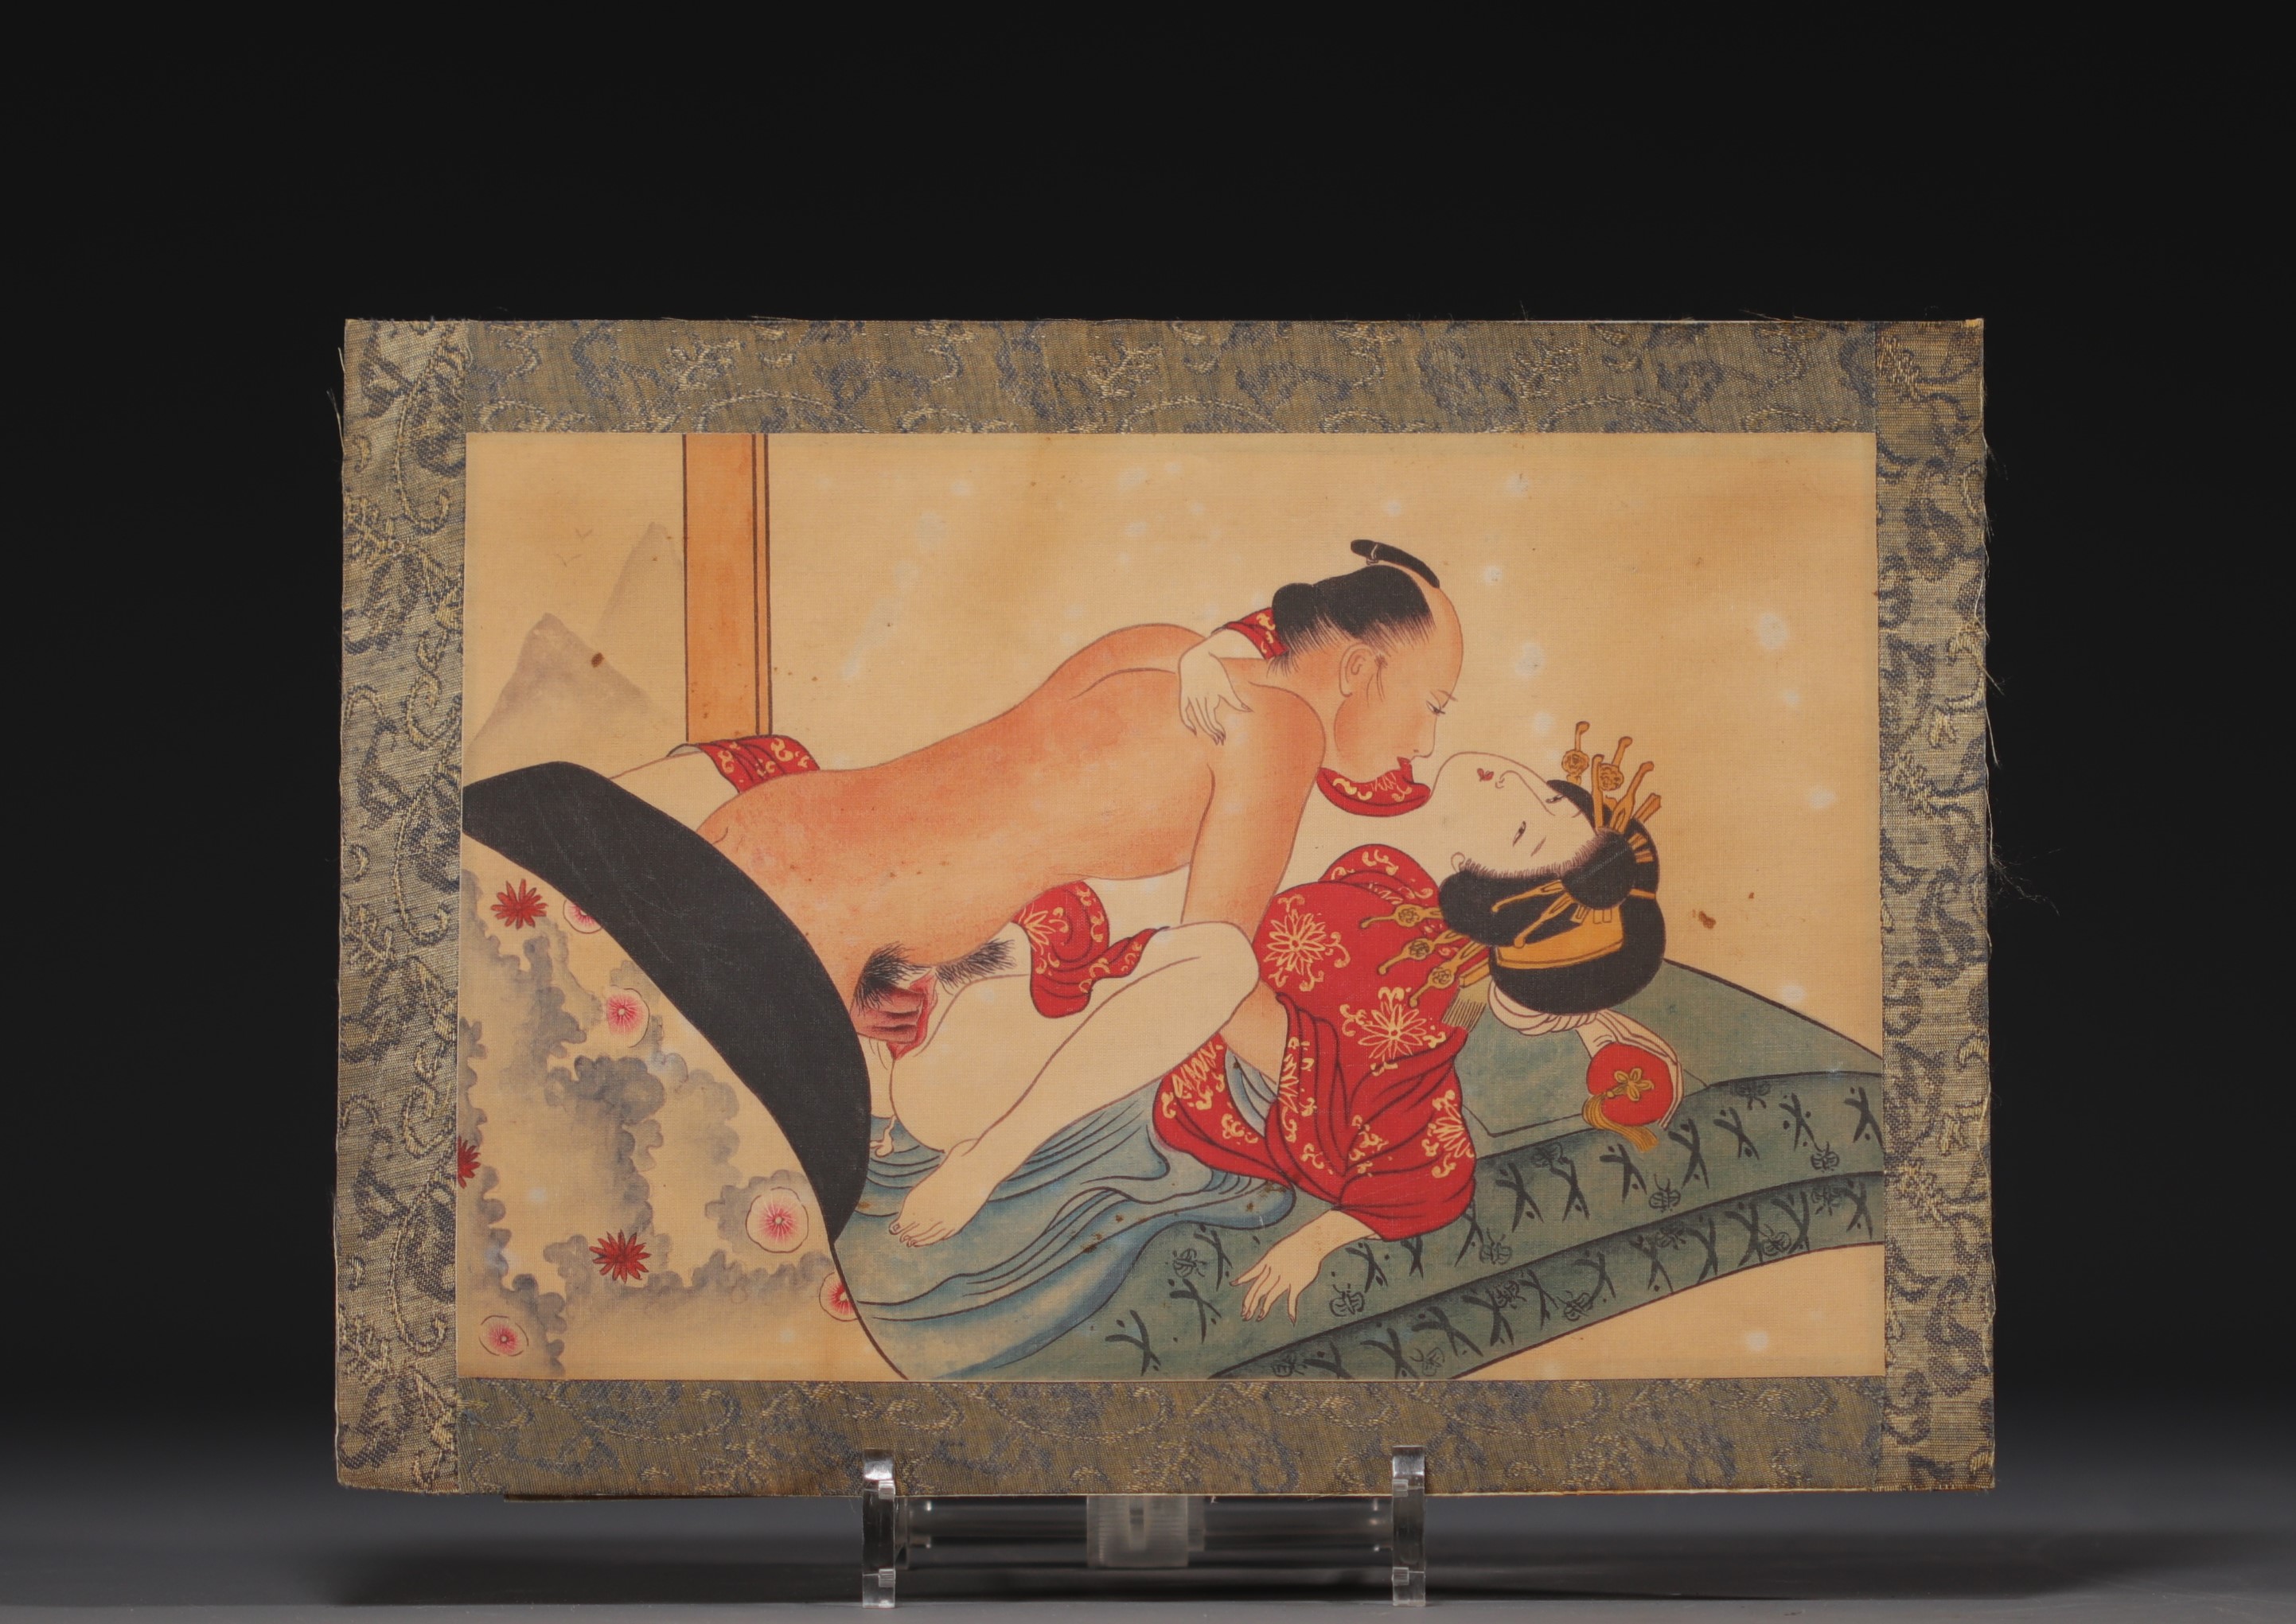 Japan - Erotic print, Meiji period. - Image 2 of 2